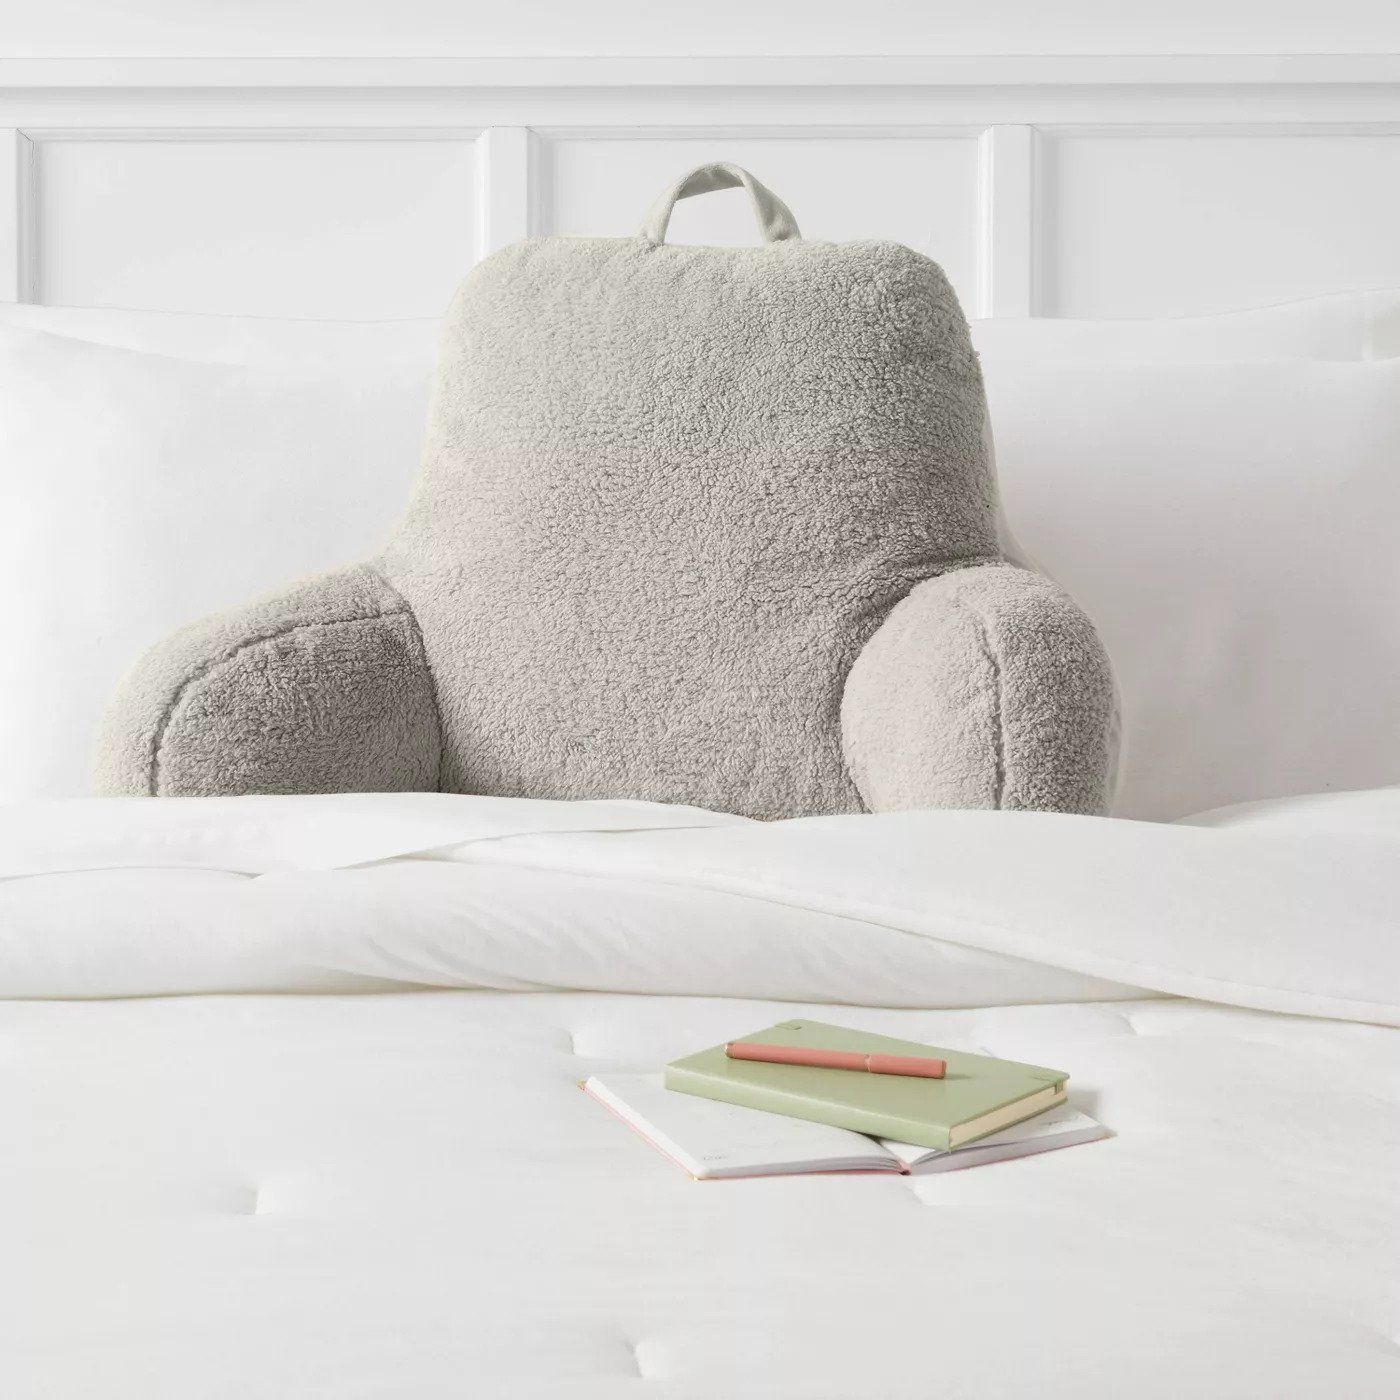 Body Pillow Cover Soft Sherpa Plush Room Essentials Cream Dorm Decor New 